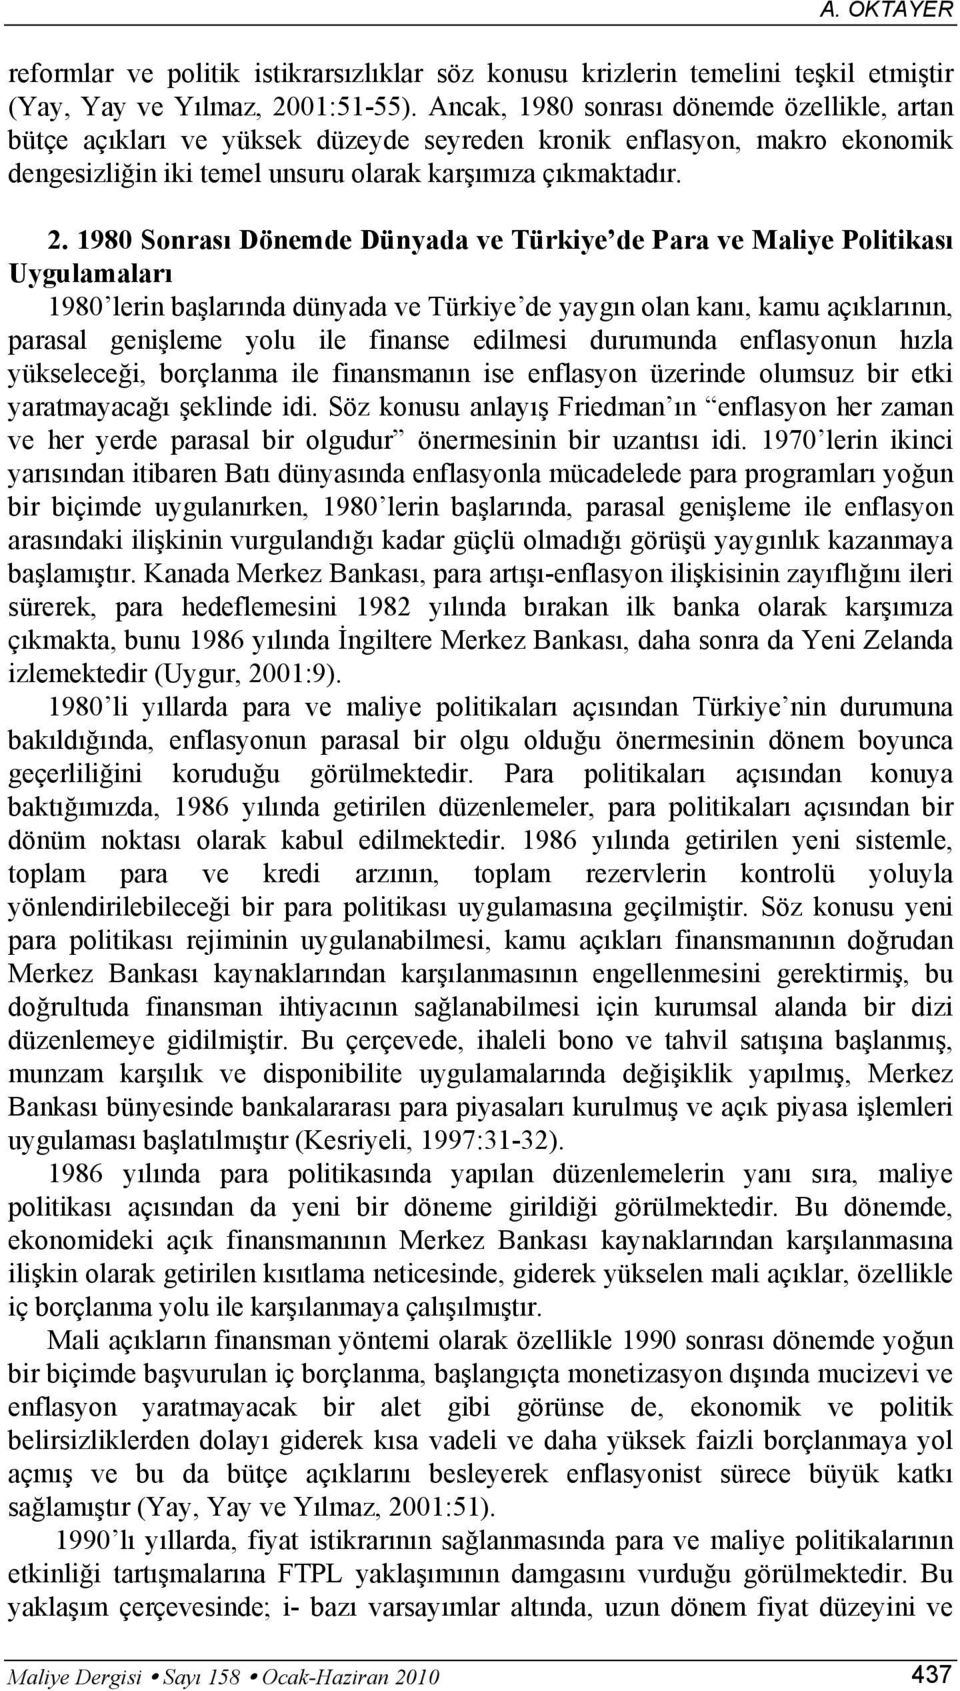 1980 Sonrası Dönemde Dünyada ve Türkiye de Para ve Maliye Poliikası Uygulamaları 1980 lerin başlarında dünyada ve Türkiye de yaygın olan kanı, kamu açıklarının, parasal genişleme yolu ile finanse